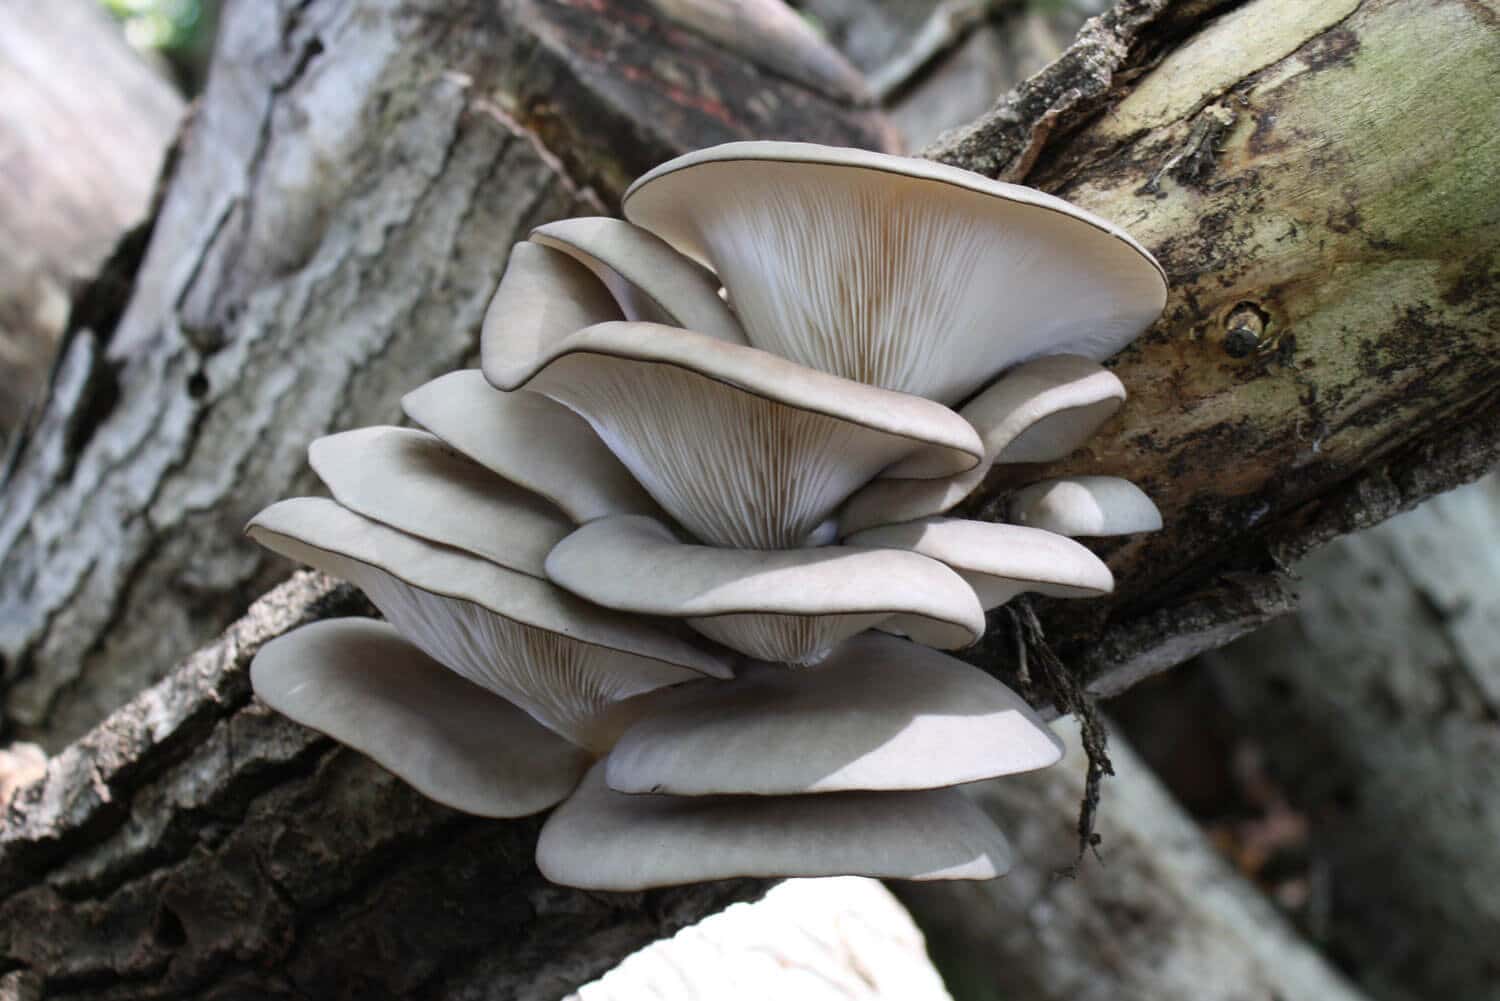 Oyster mushroom Pleurotus ostreatus